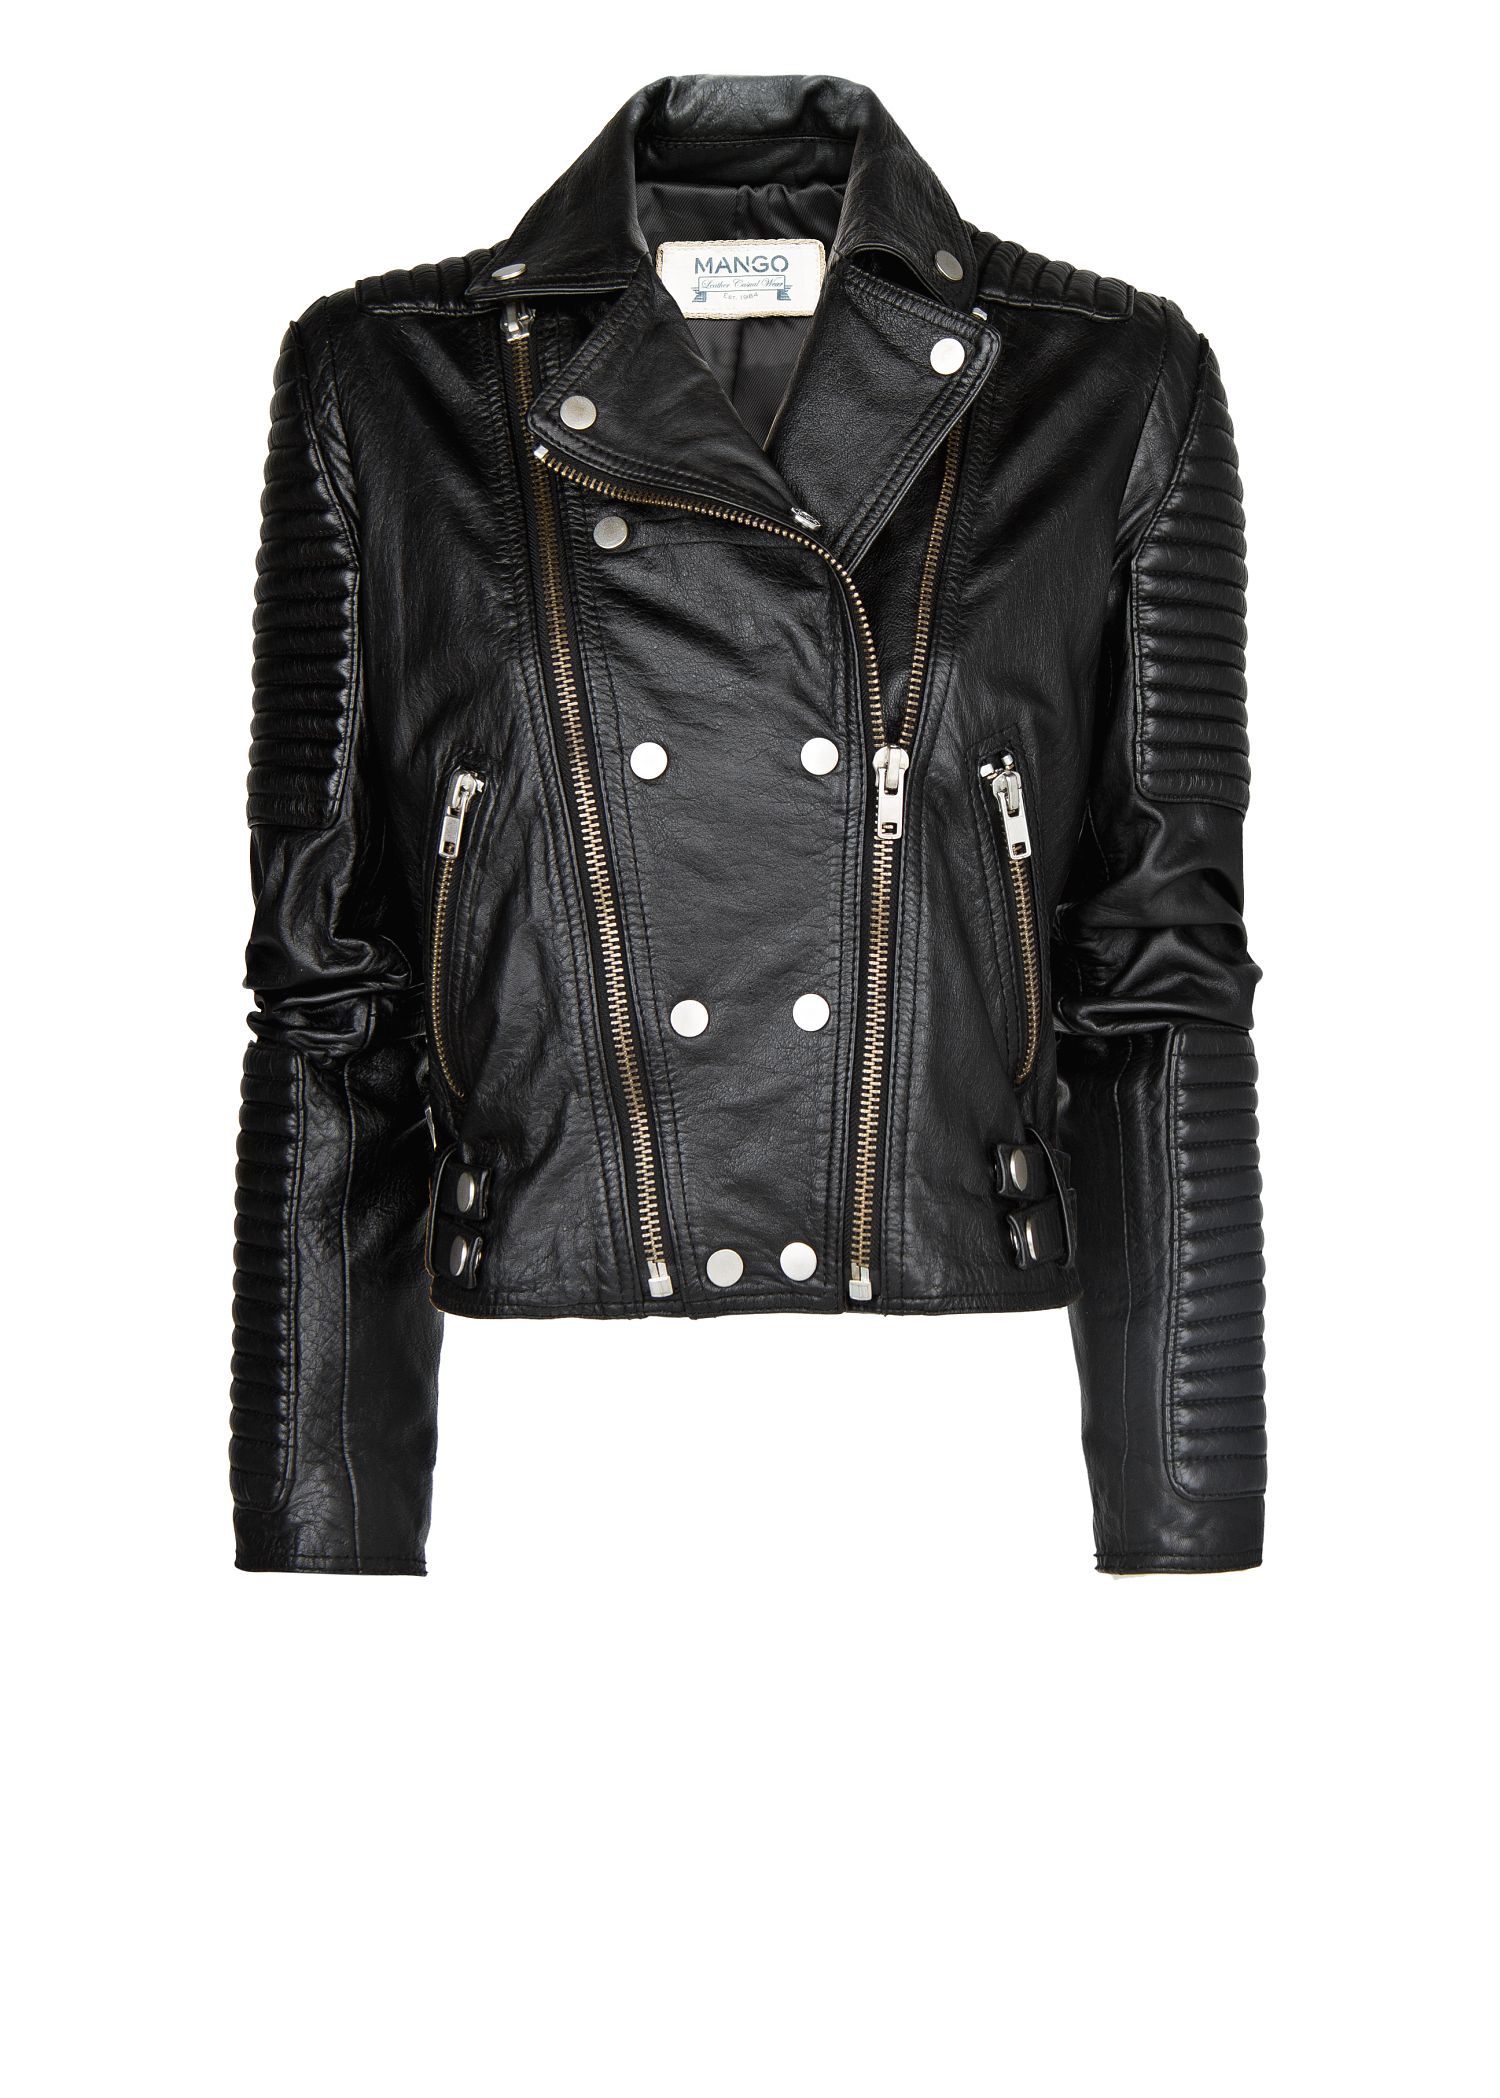 Lyst - Mango Leather Biker Jacket in Black